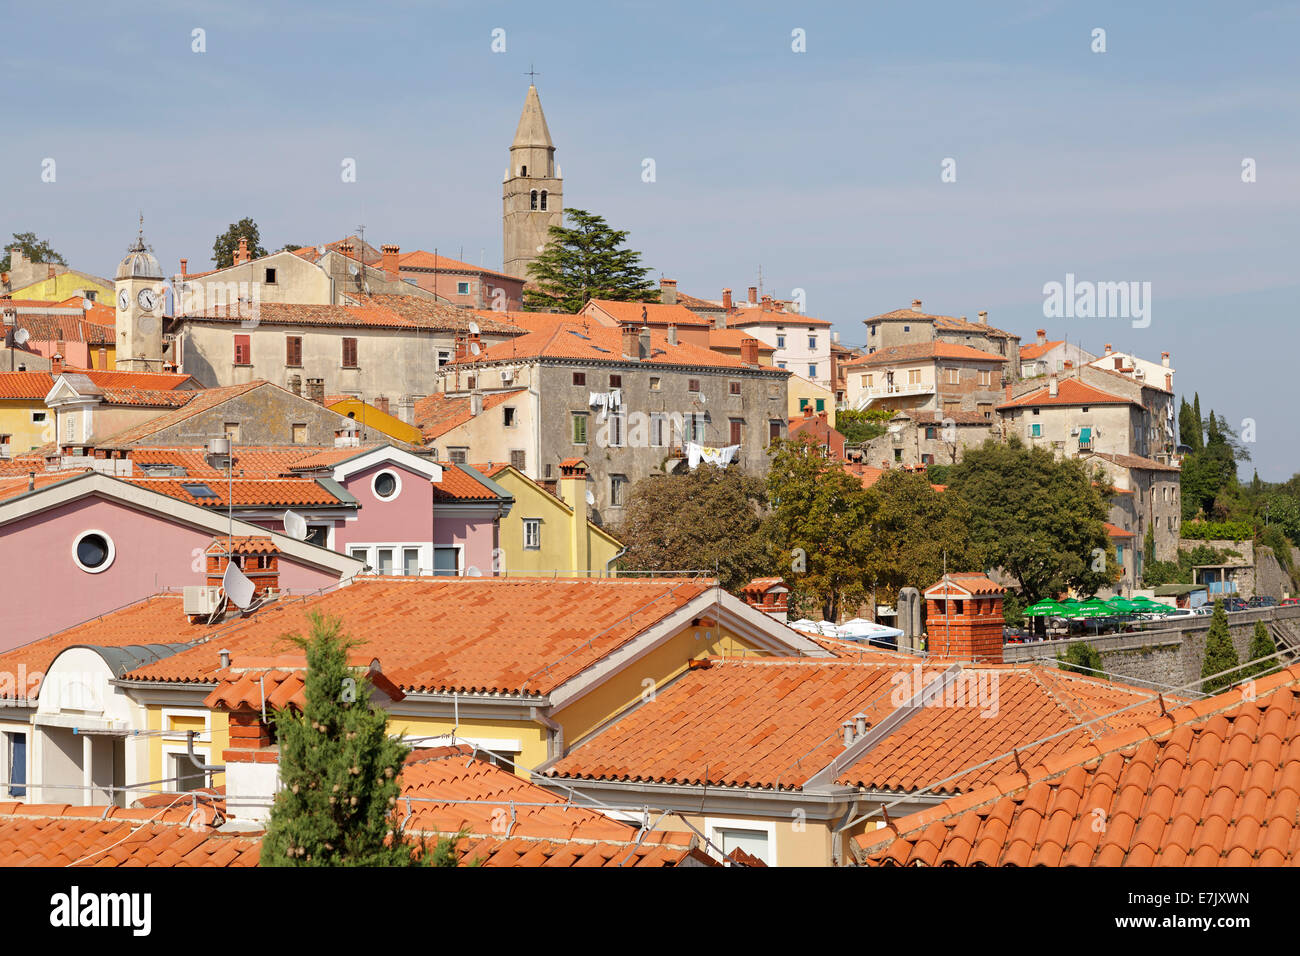 old town of Labin, Istria, Croatia Stock Photo